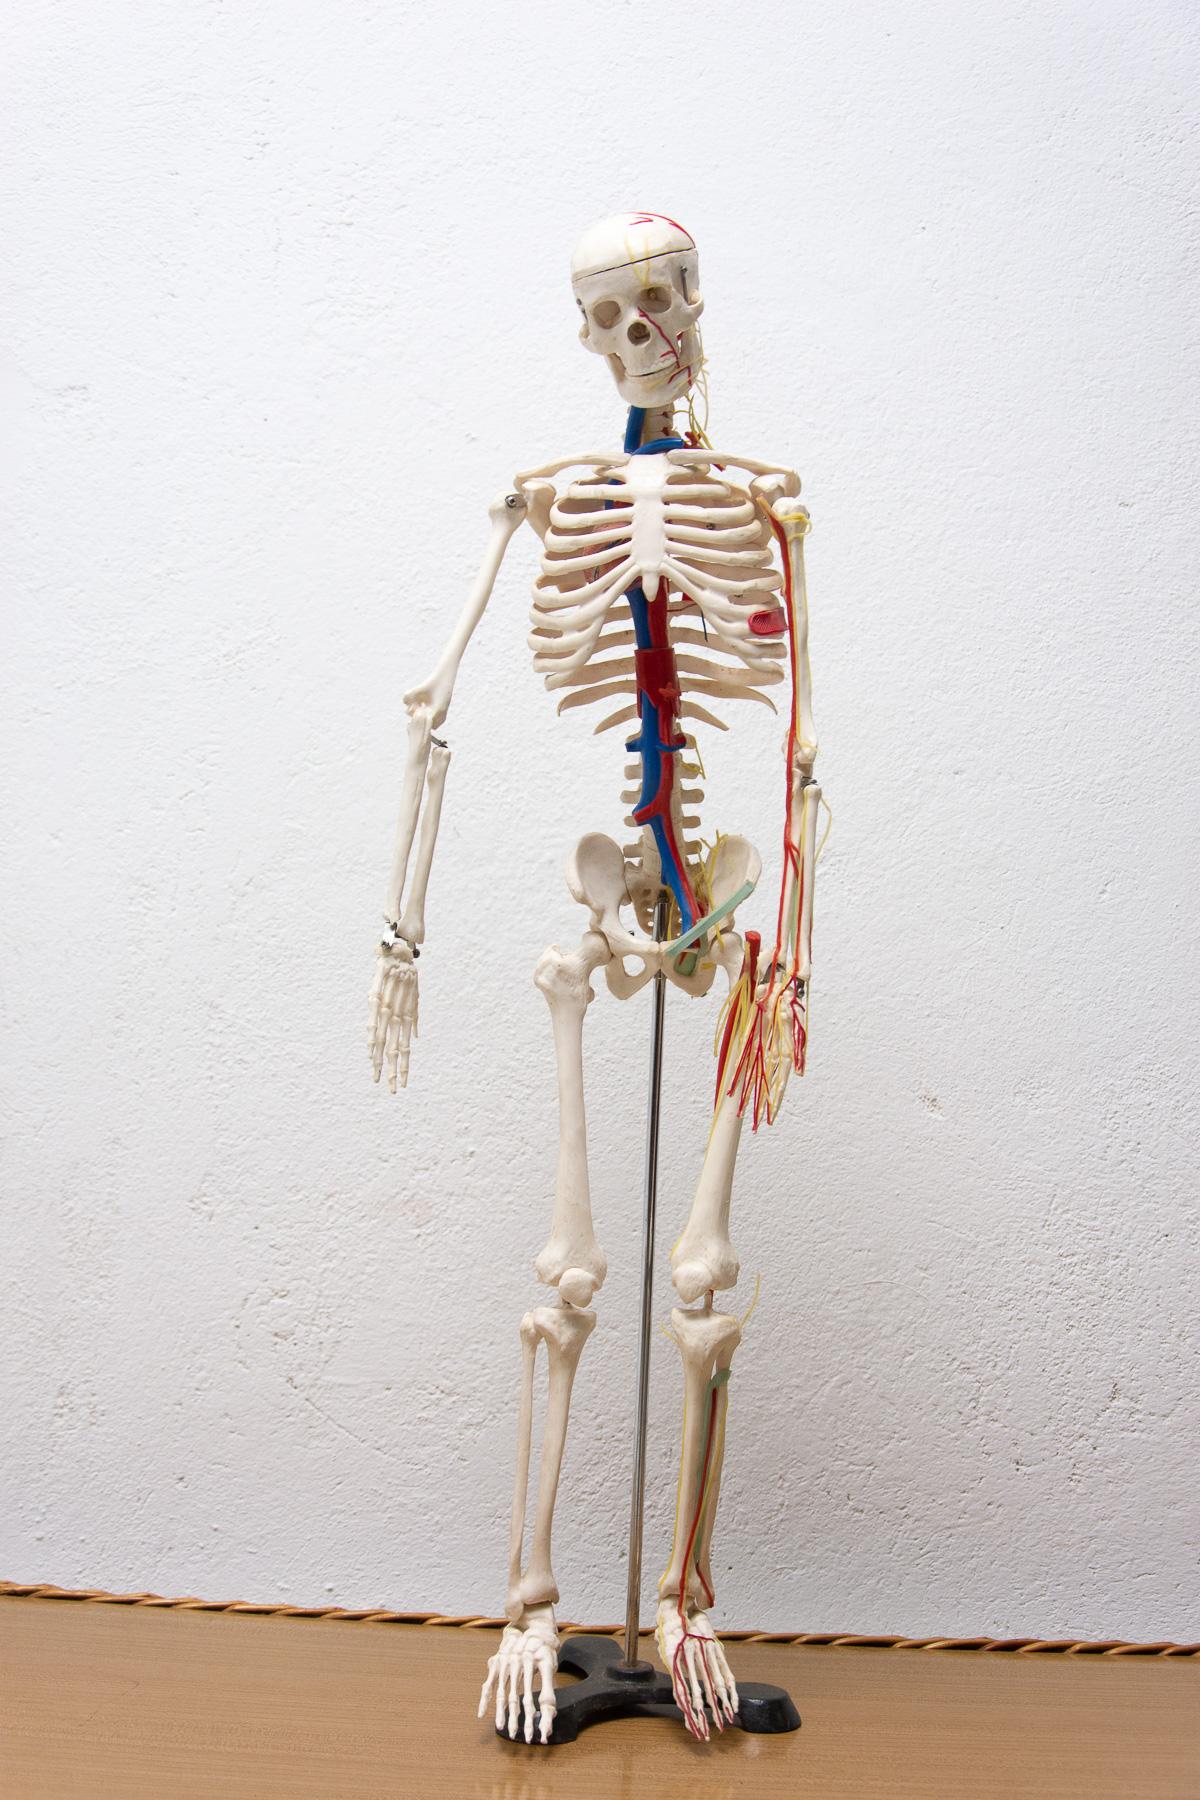 Ce support scolaire représentant un squelette humain a été fabriqué en plastique dans les années 1960 en Tchécoslovaquie. Il est en très bon état, présente de légers signes d'âge et d'utilisation

Mesures : Hauteur : 86 cm

Largeur : 21